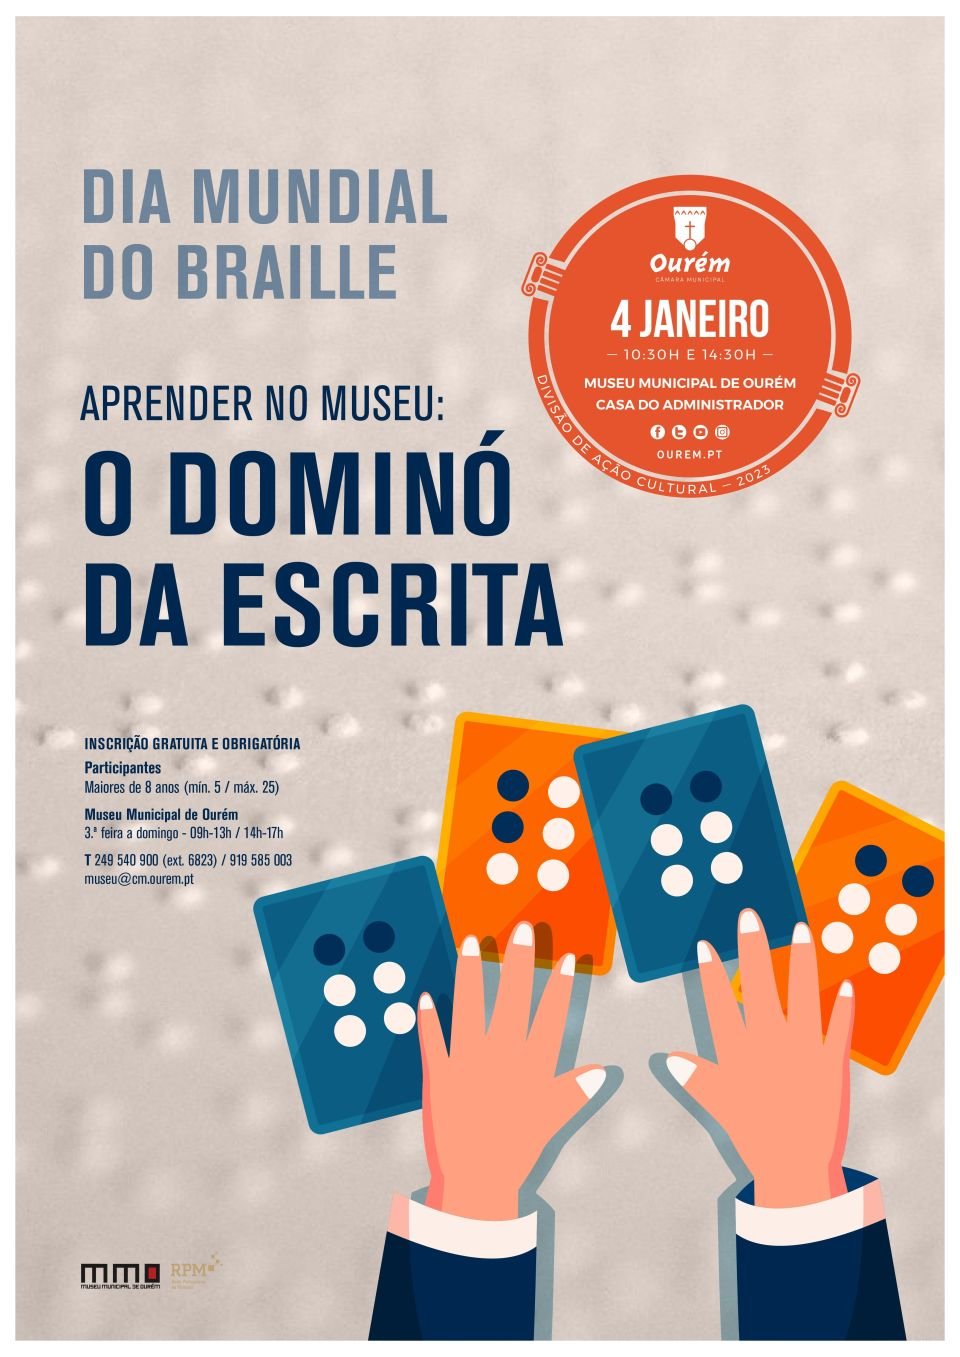 DIA MUNDIAL DO BRAILLE - “APRENDER NO MUSEU: O DOMINÓ DA ESCRITA”